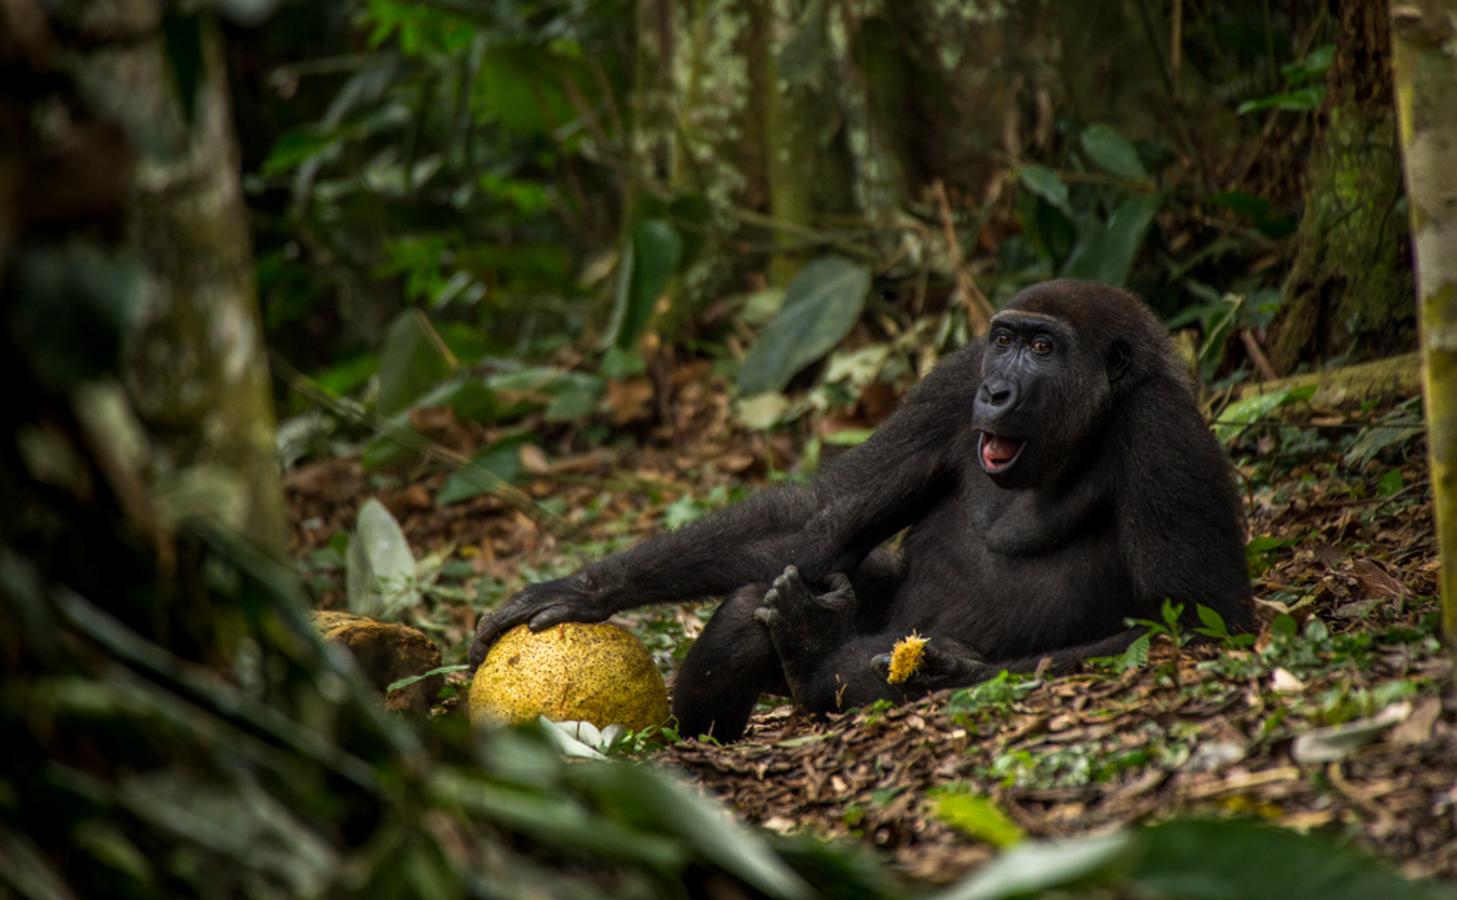 Es la foto ganadora del certamen en la categoría juvenil. Obra del holandés Daniël Nelson, muestra al gorila ‘Caco’ en un parque nacional del Congo. El joven ‘Caco’ se siente relajado en el bosque, como si estuviera en el sofá de su casa. Esa conexión del gorila con su hogar cautivó al jurado. «Espero sensibilizar sobre los gorilas en peligro de extinción», dice Daniël. 